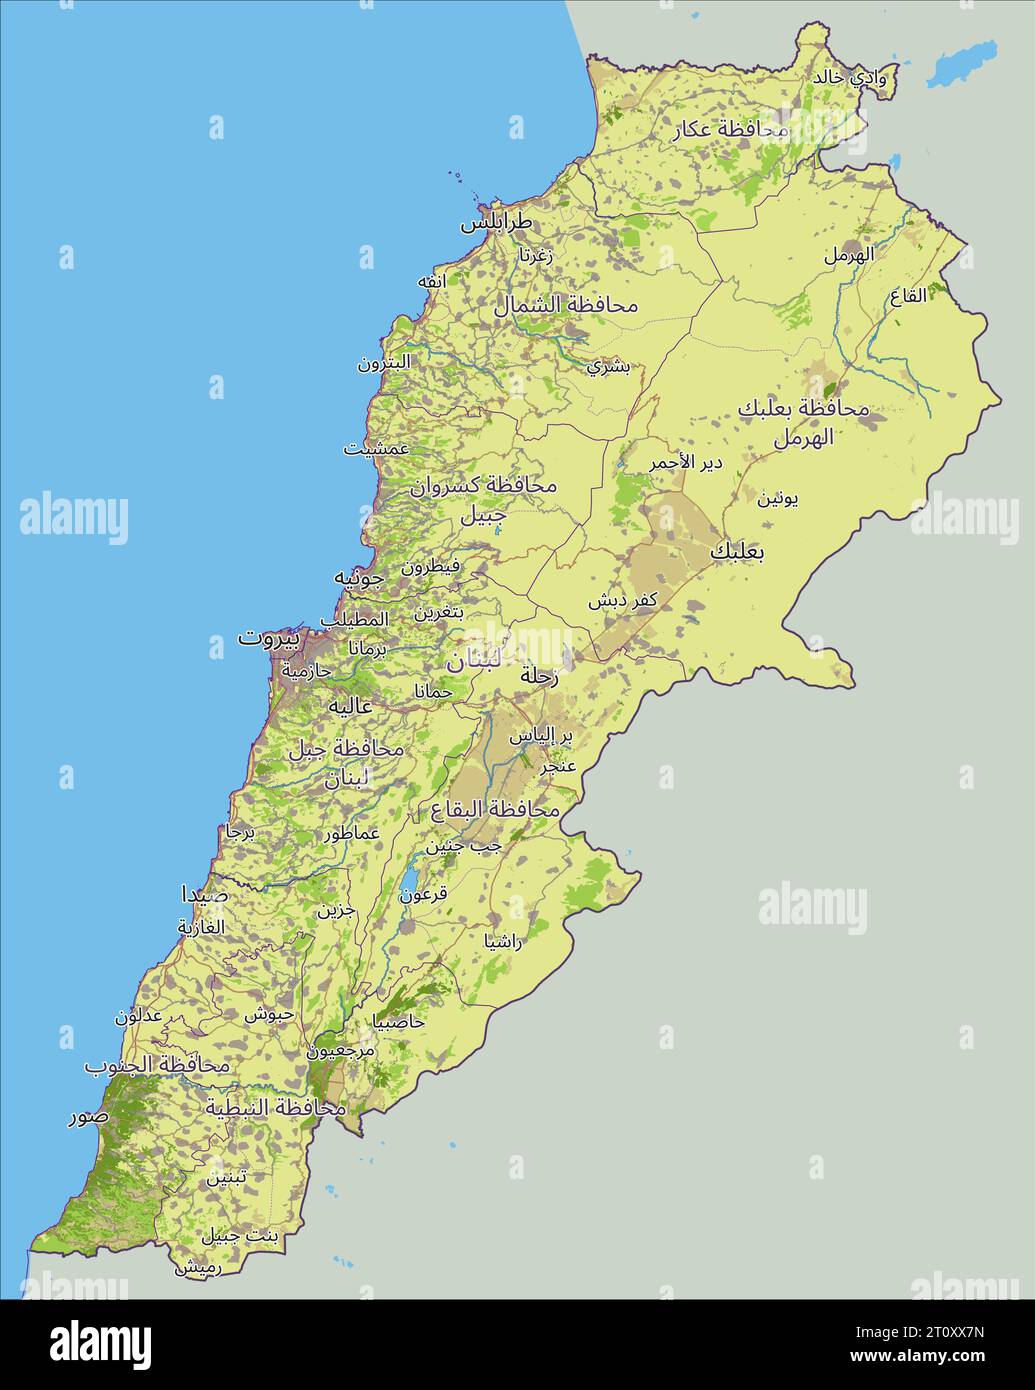 Libanon Karte mit Hauptstadt Beirut, nationalen Grenzen, wichtigen Städten, Flüssen und Seen. Arabische Beschriftung Stock Vektor